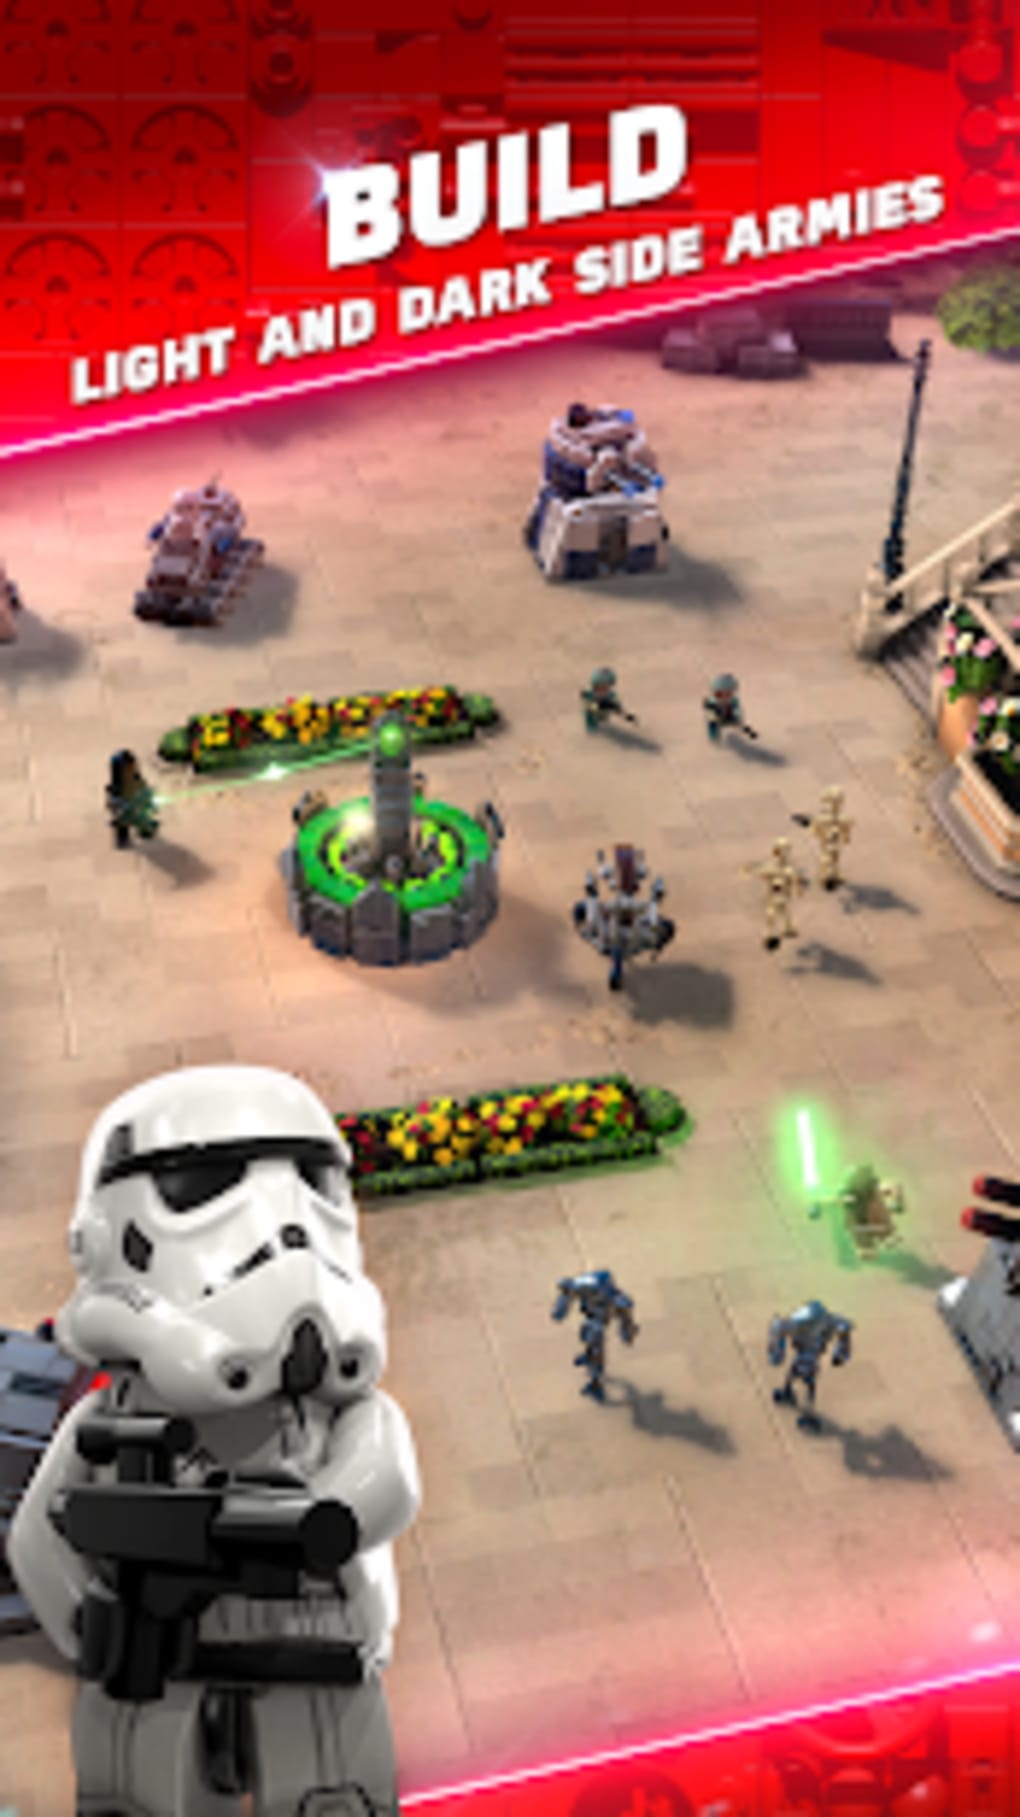 lego star wars battles mobile